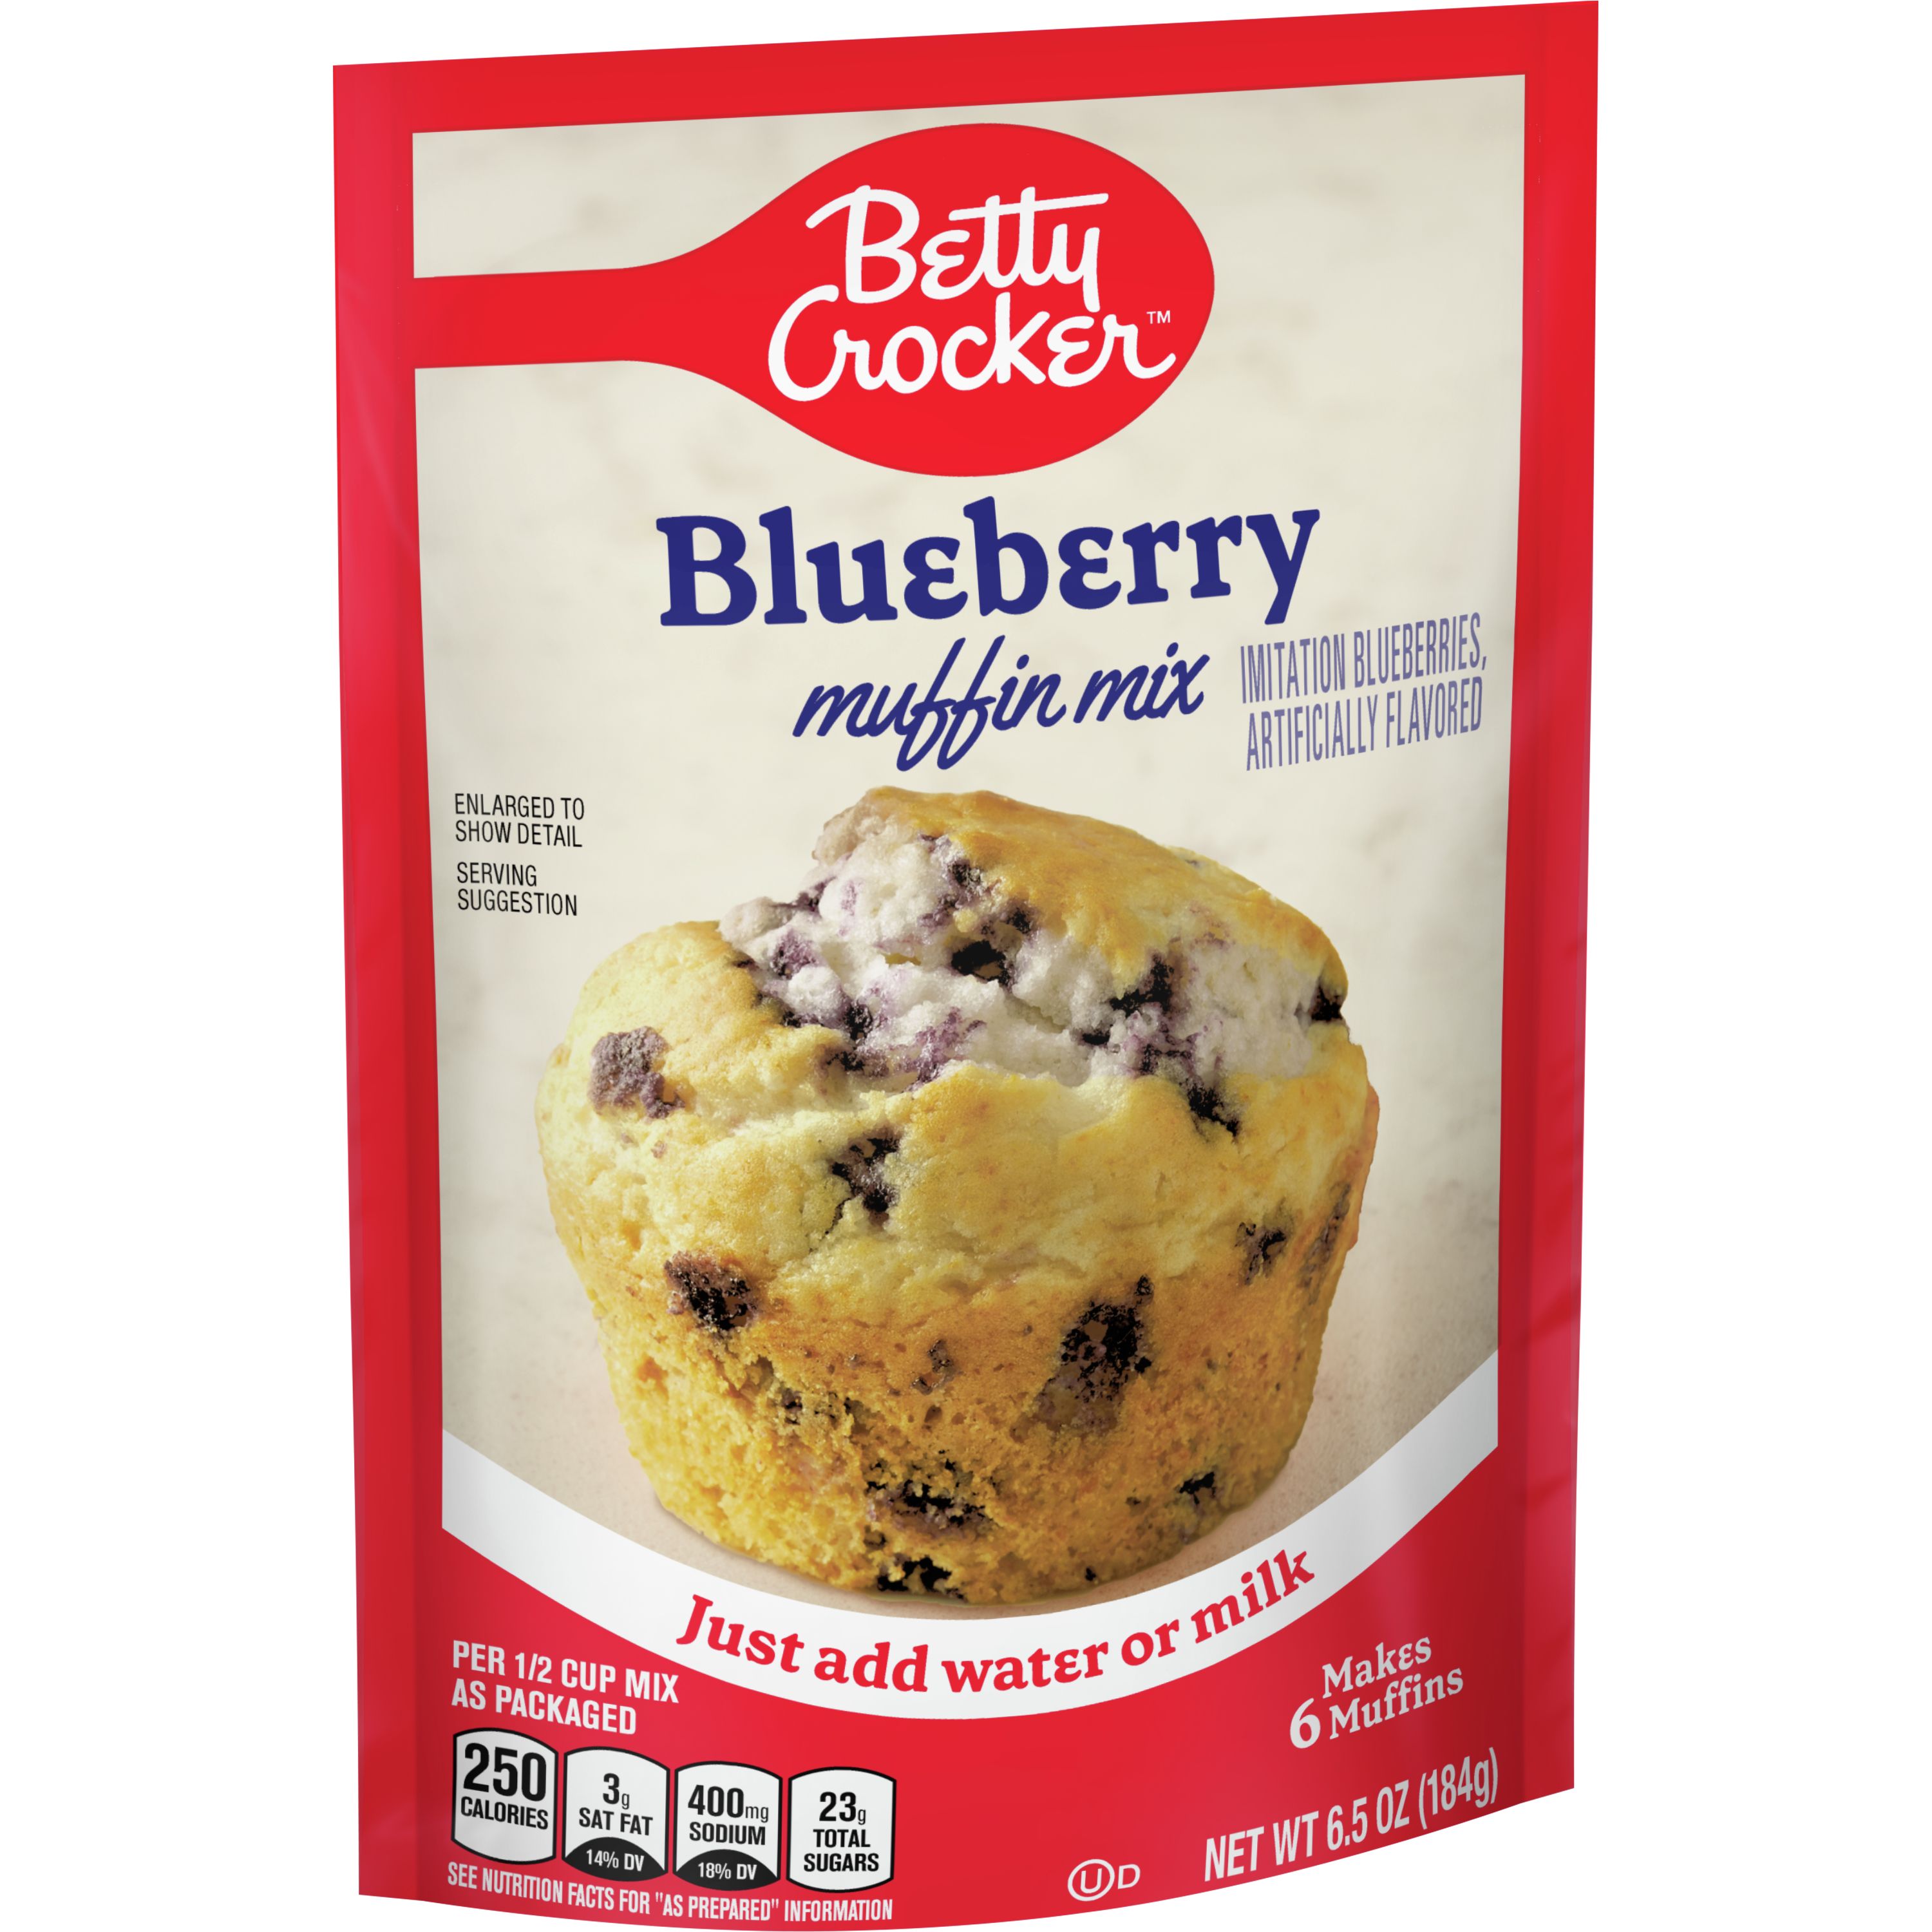 Betty Crocker™ Blueberry Muffin Mix, oz - BettyCrocker.com